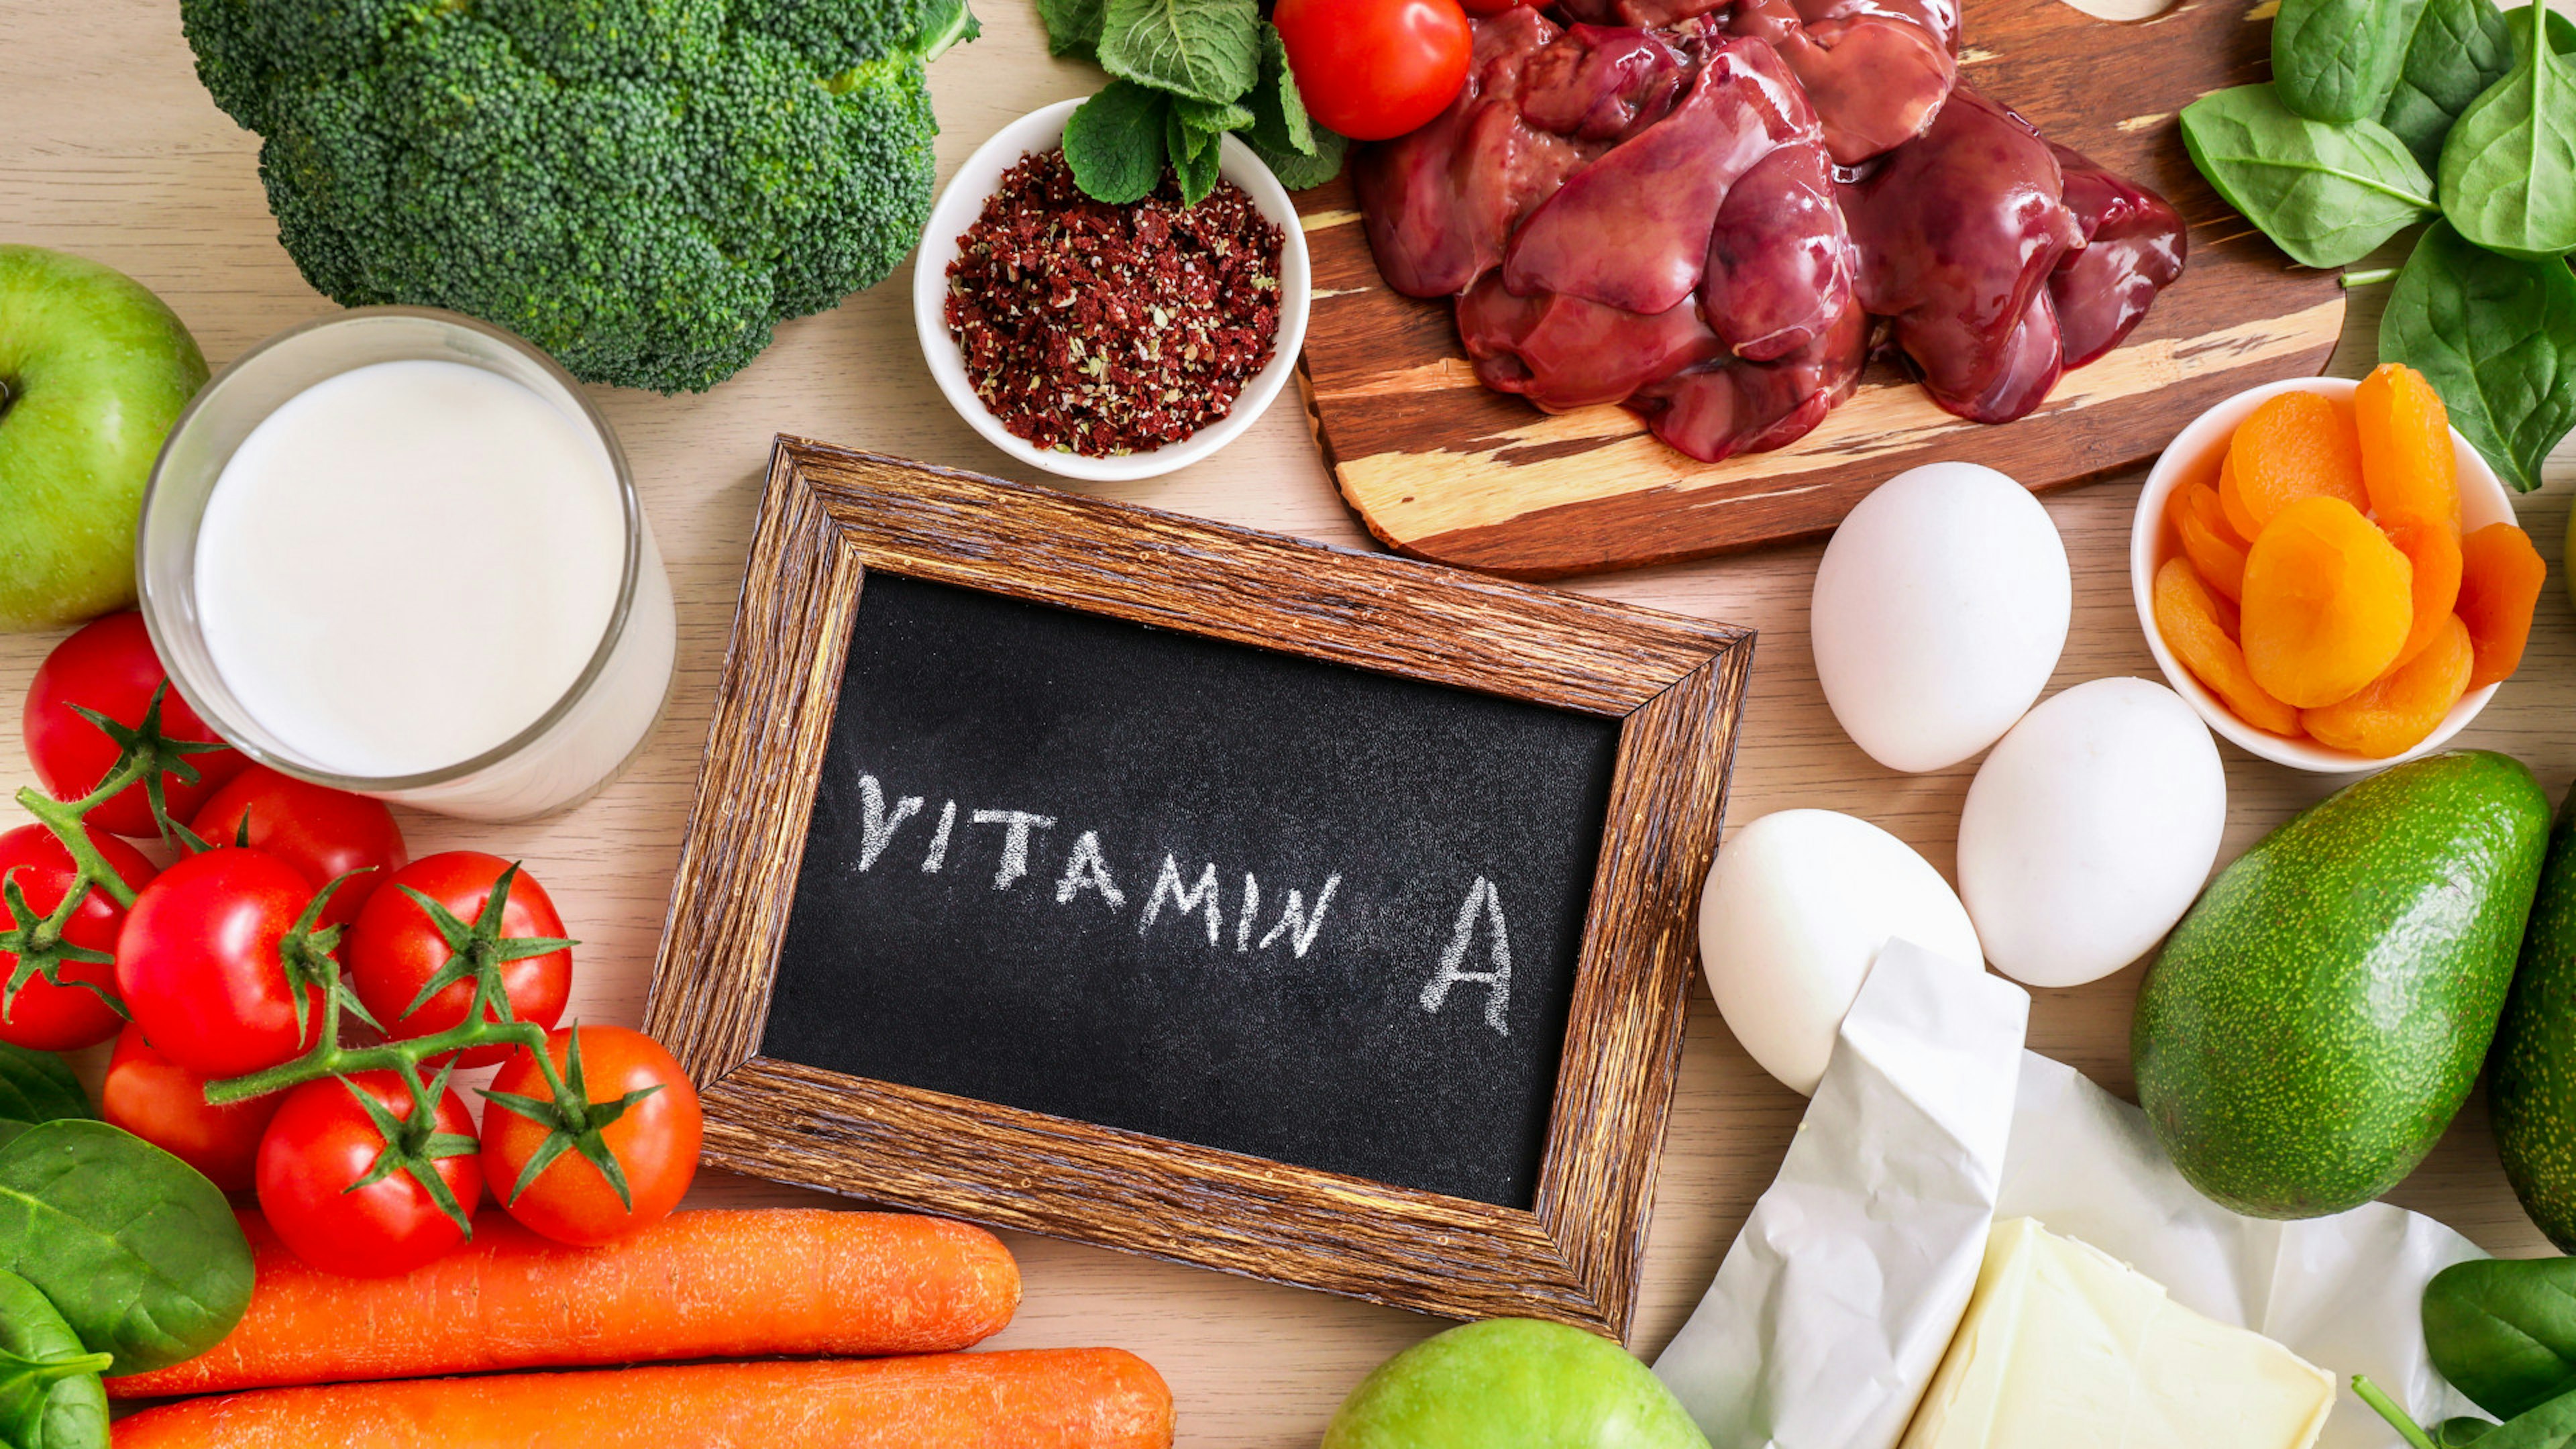 Lebensmittel, die Vitamin Aenthalten